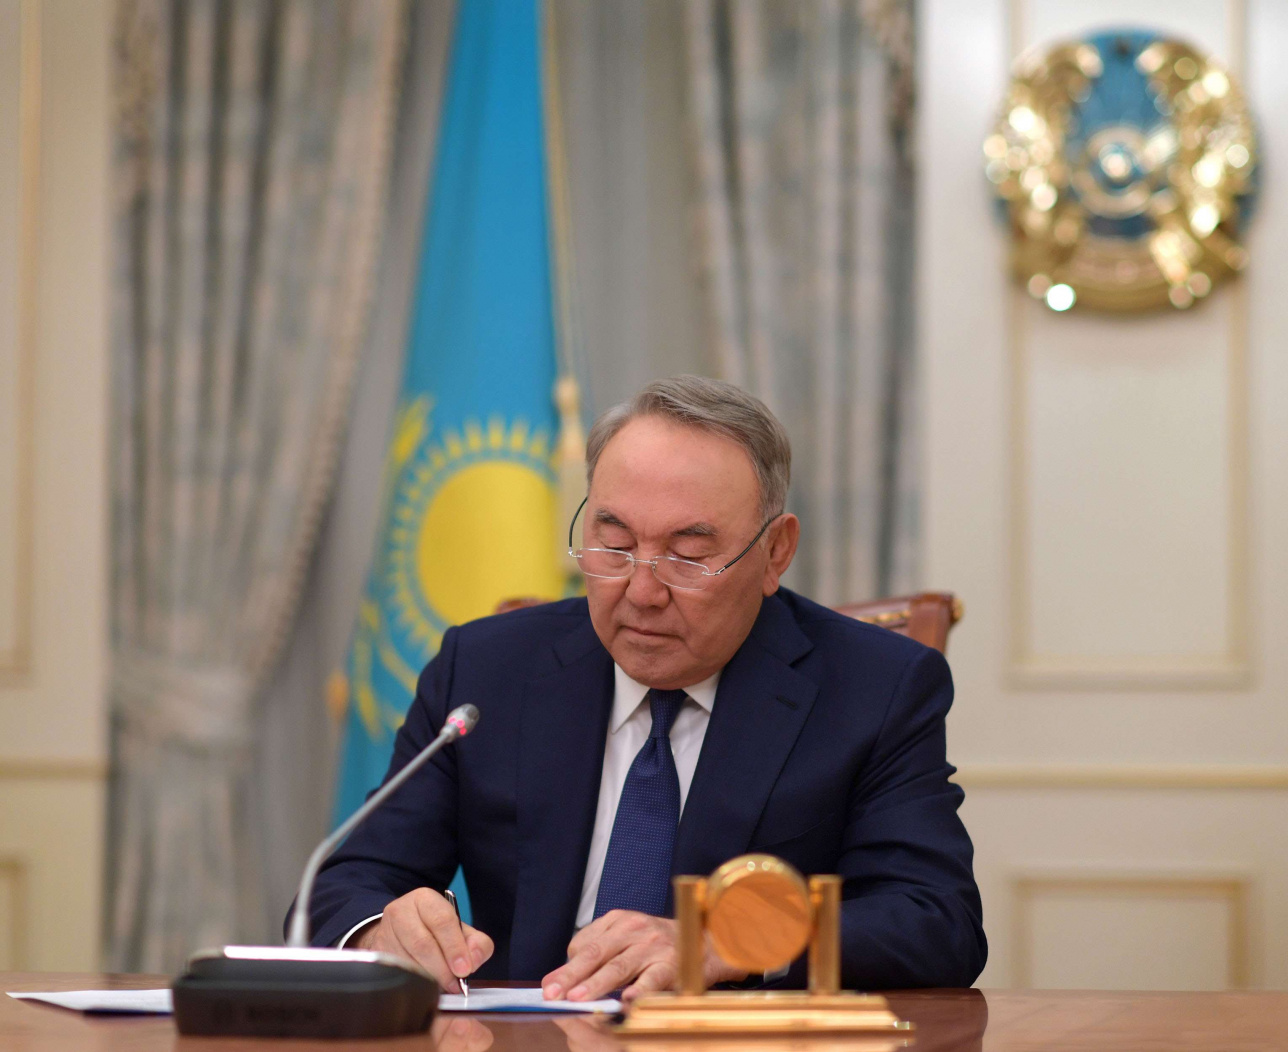 Мемлекет басшысы Нұрсұлтан Назарбаевтың Қазақстан халқына үндеуі (видео)